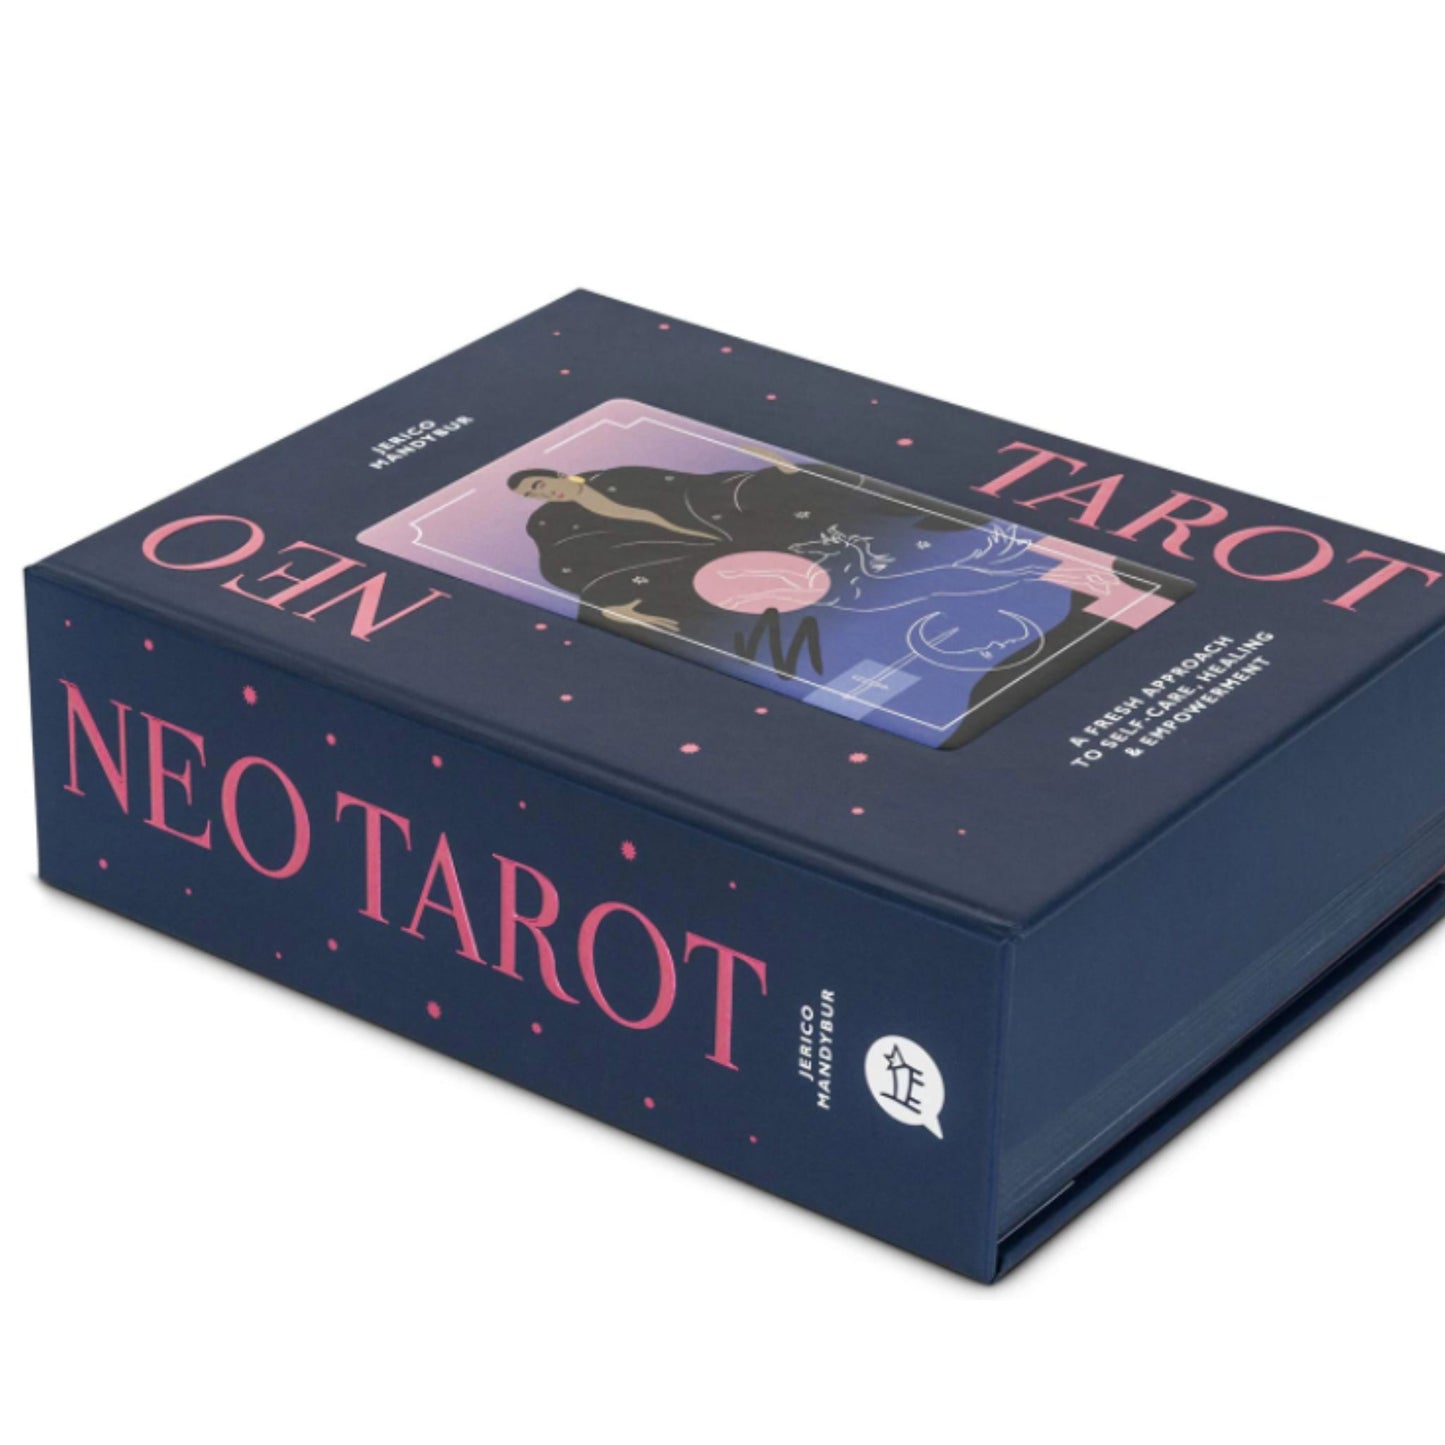 Neo Tarot Deck